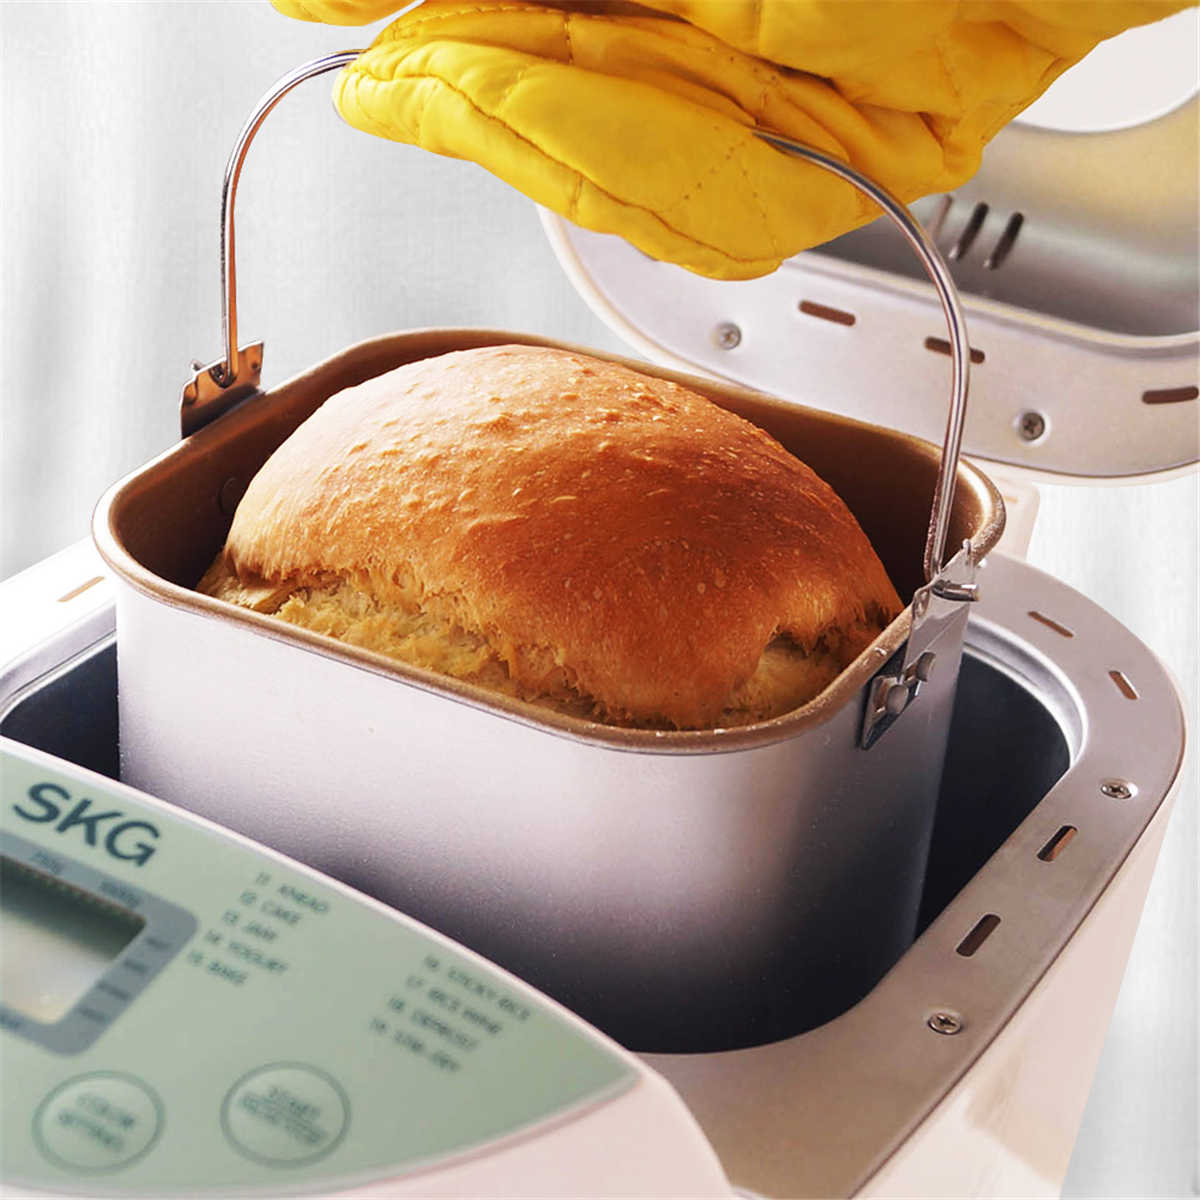 Припек что это при выпечке хлеба. Хлебопечка Automatic Breadmaker TS-018s. Хлебопечка с хлебом. Аппарат для готовки хлеба. Выпекание хлеба в хлебопечке.